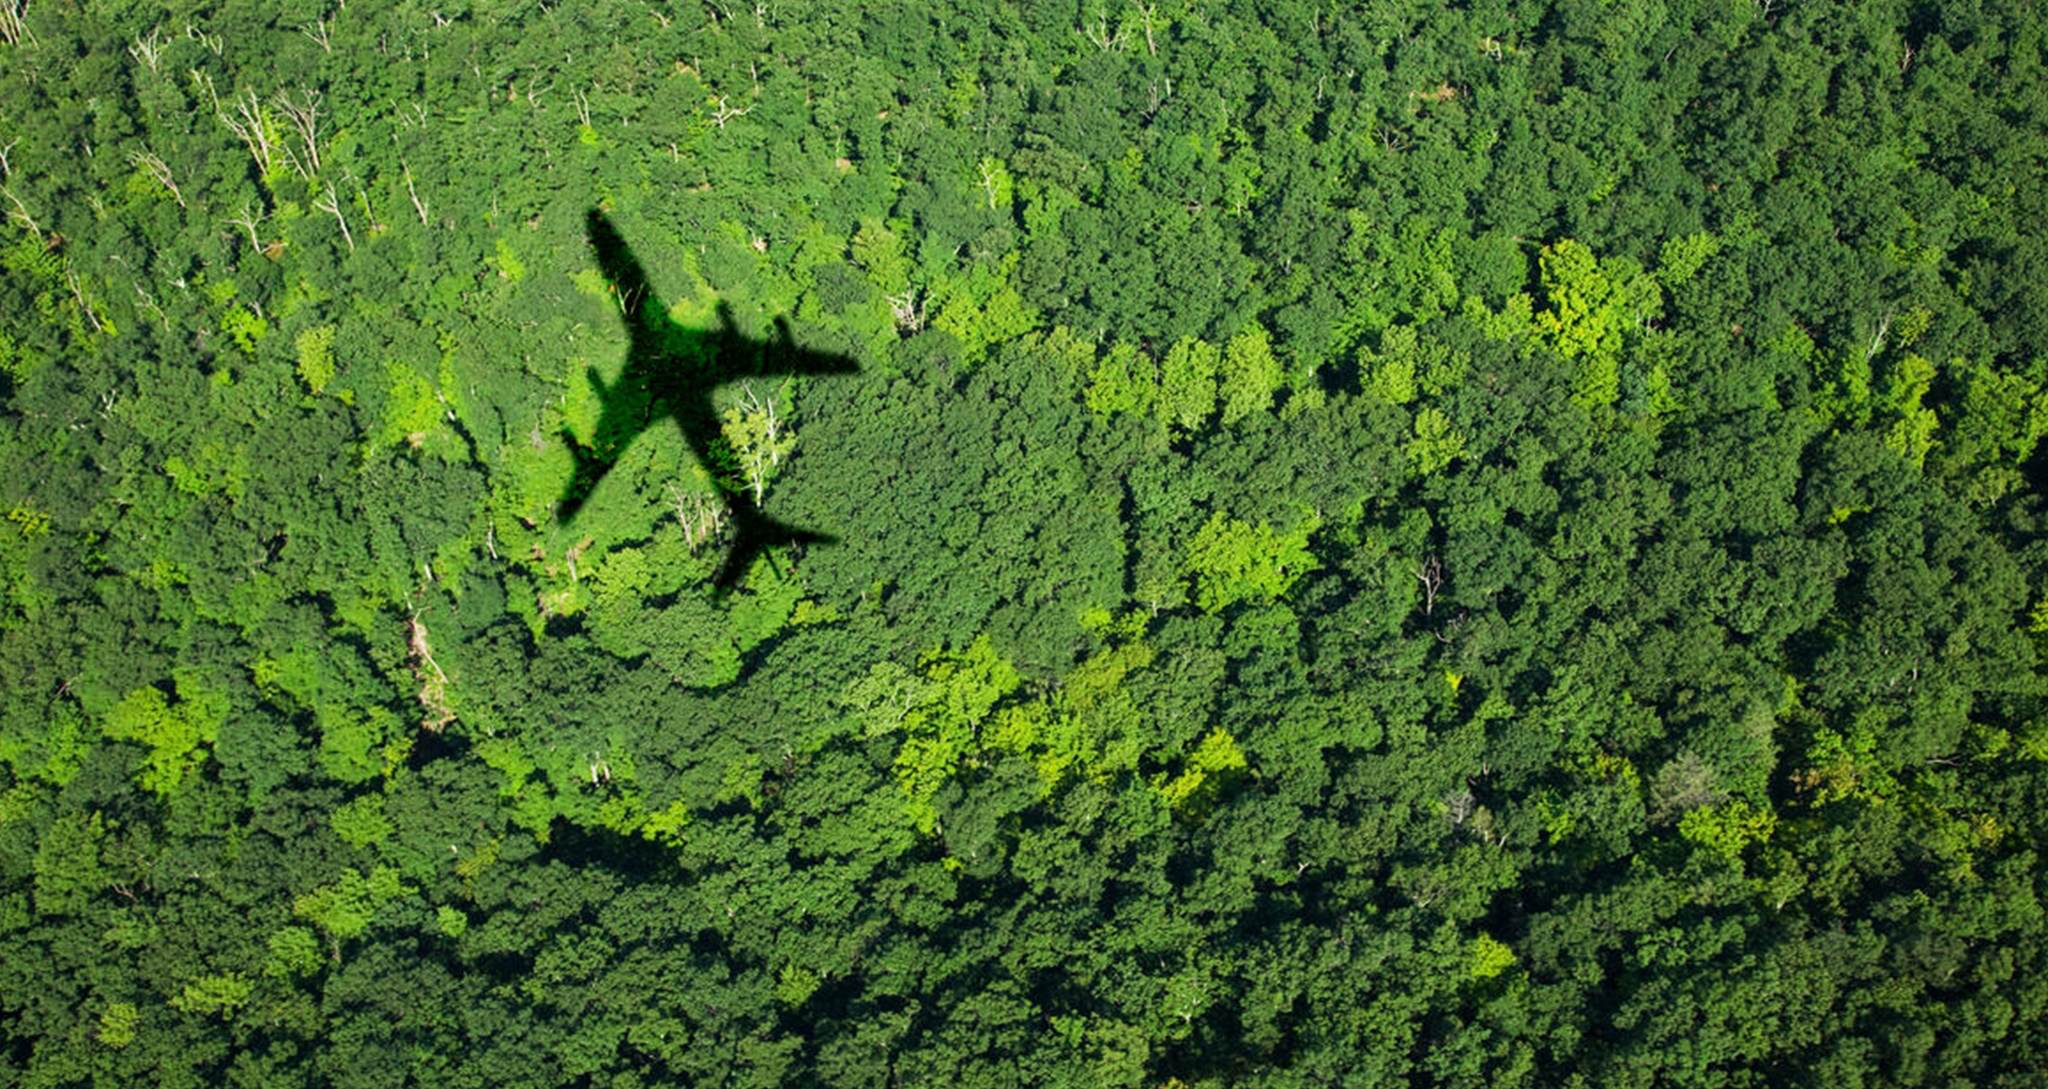 carbon footprint air travel